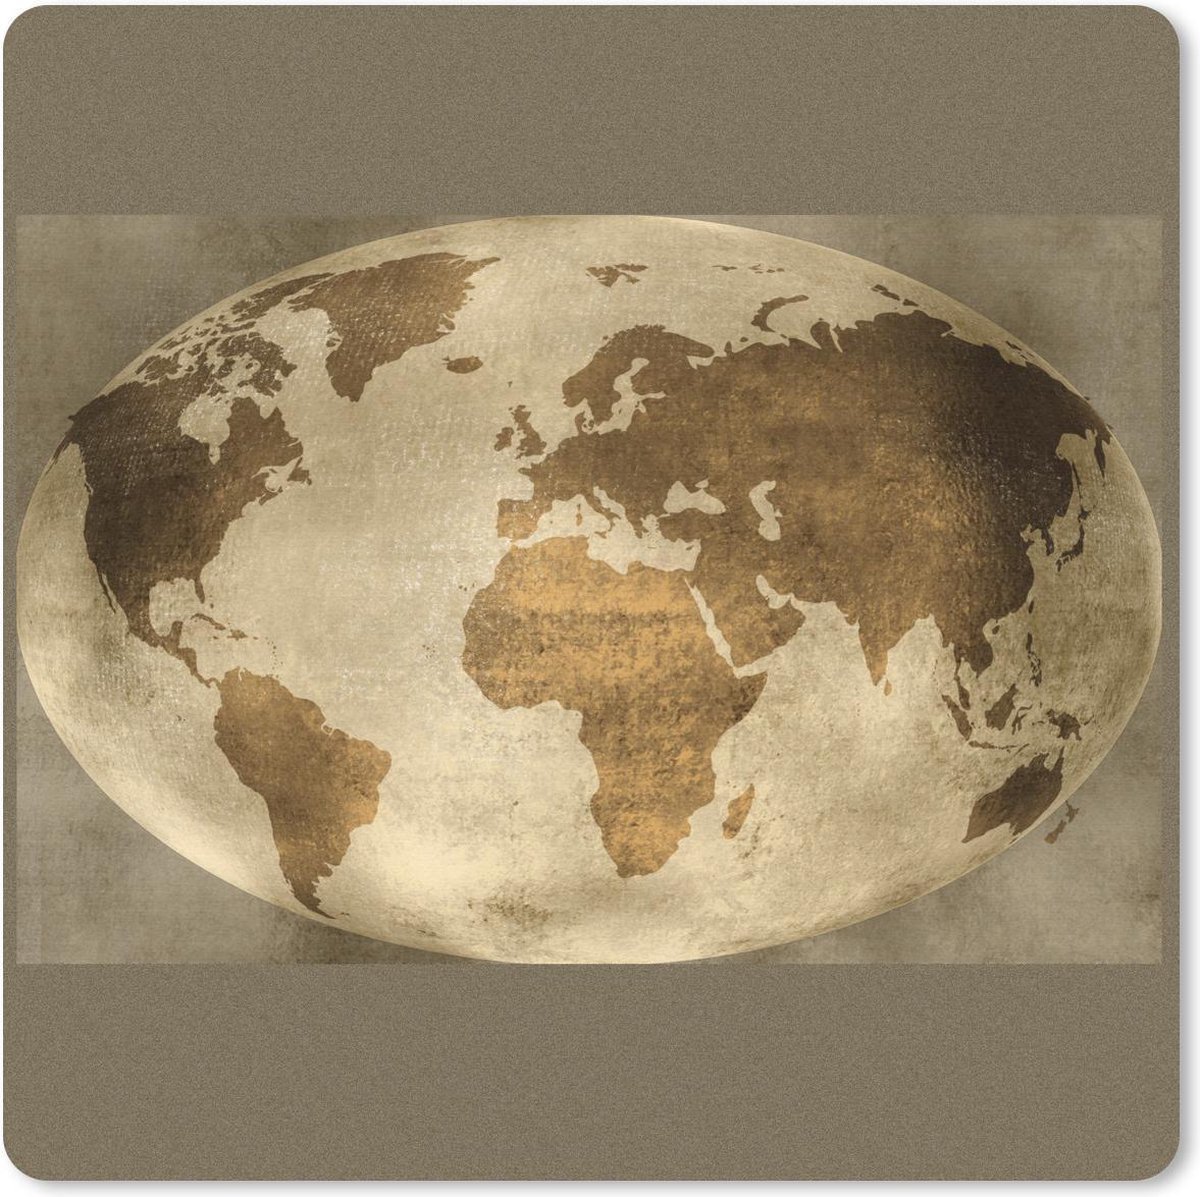 Muismat Klein - Wereldkaart - Wereldbol - Retro - 20x20 cm